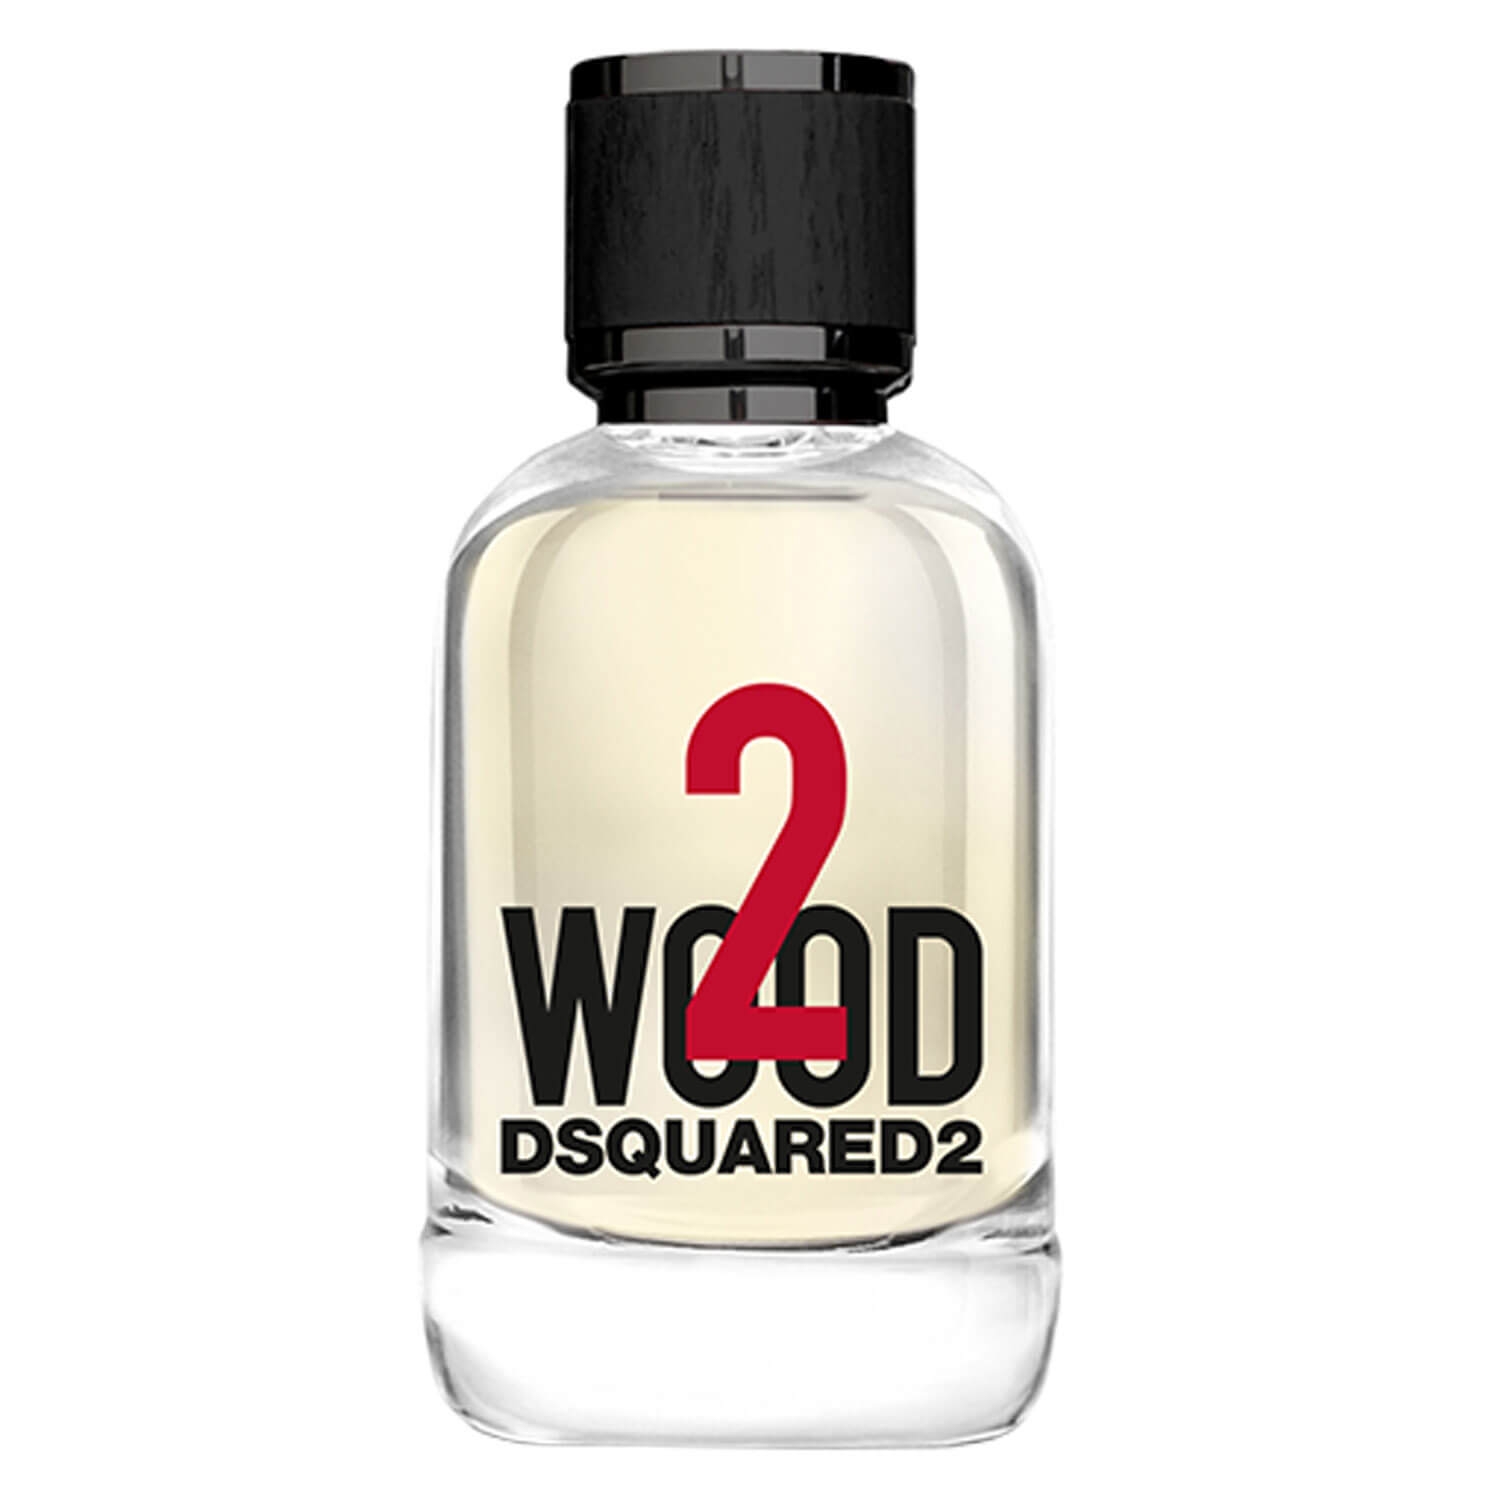 Produktbild von DSQUARED2 TWO WOOD - Eau de Toilette Natural Spray